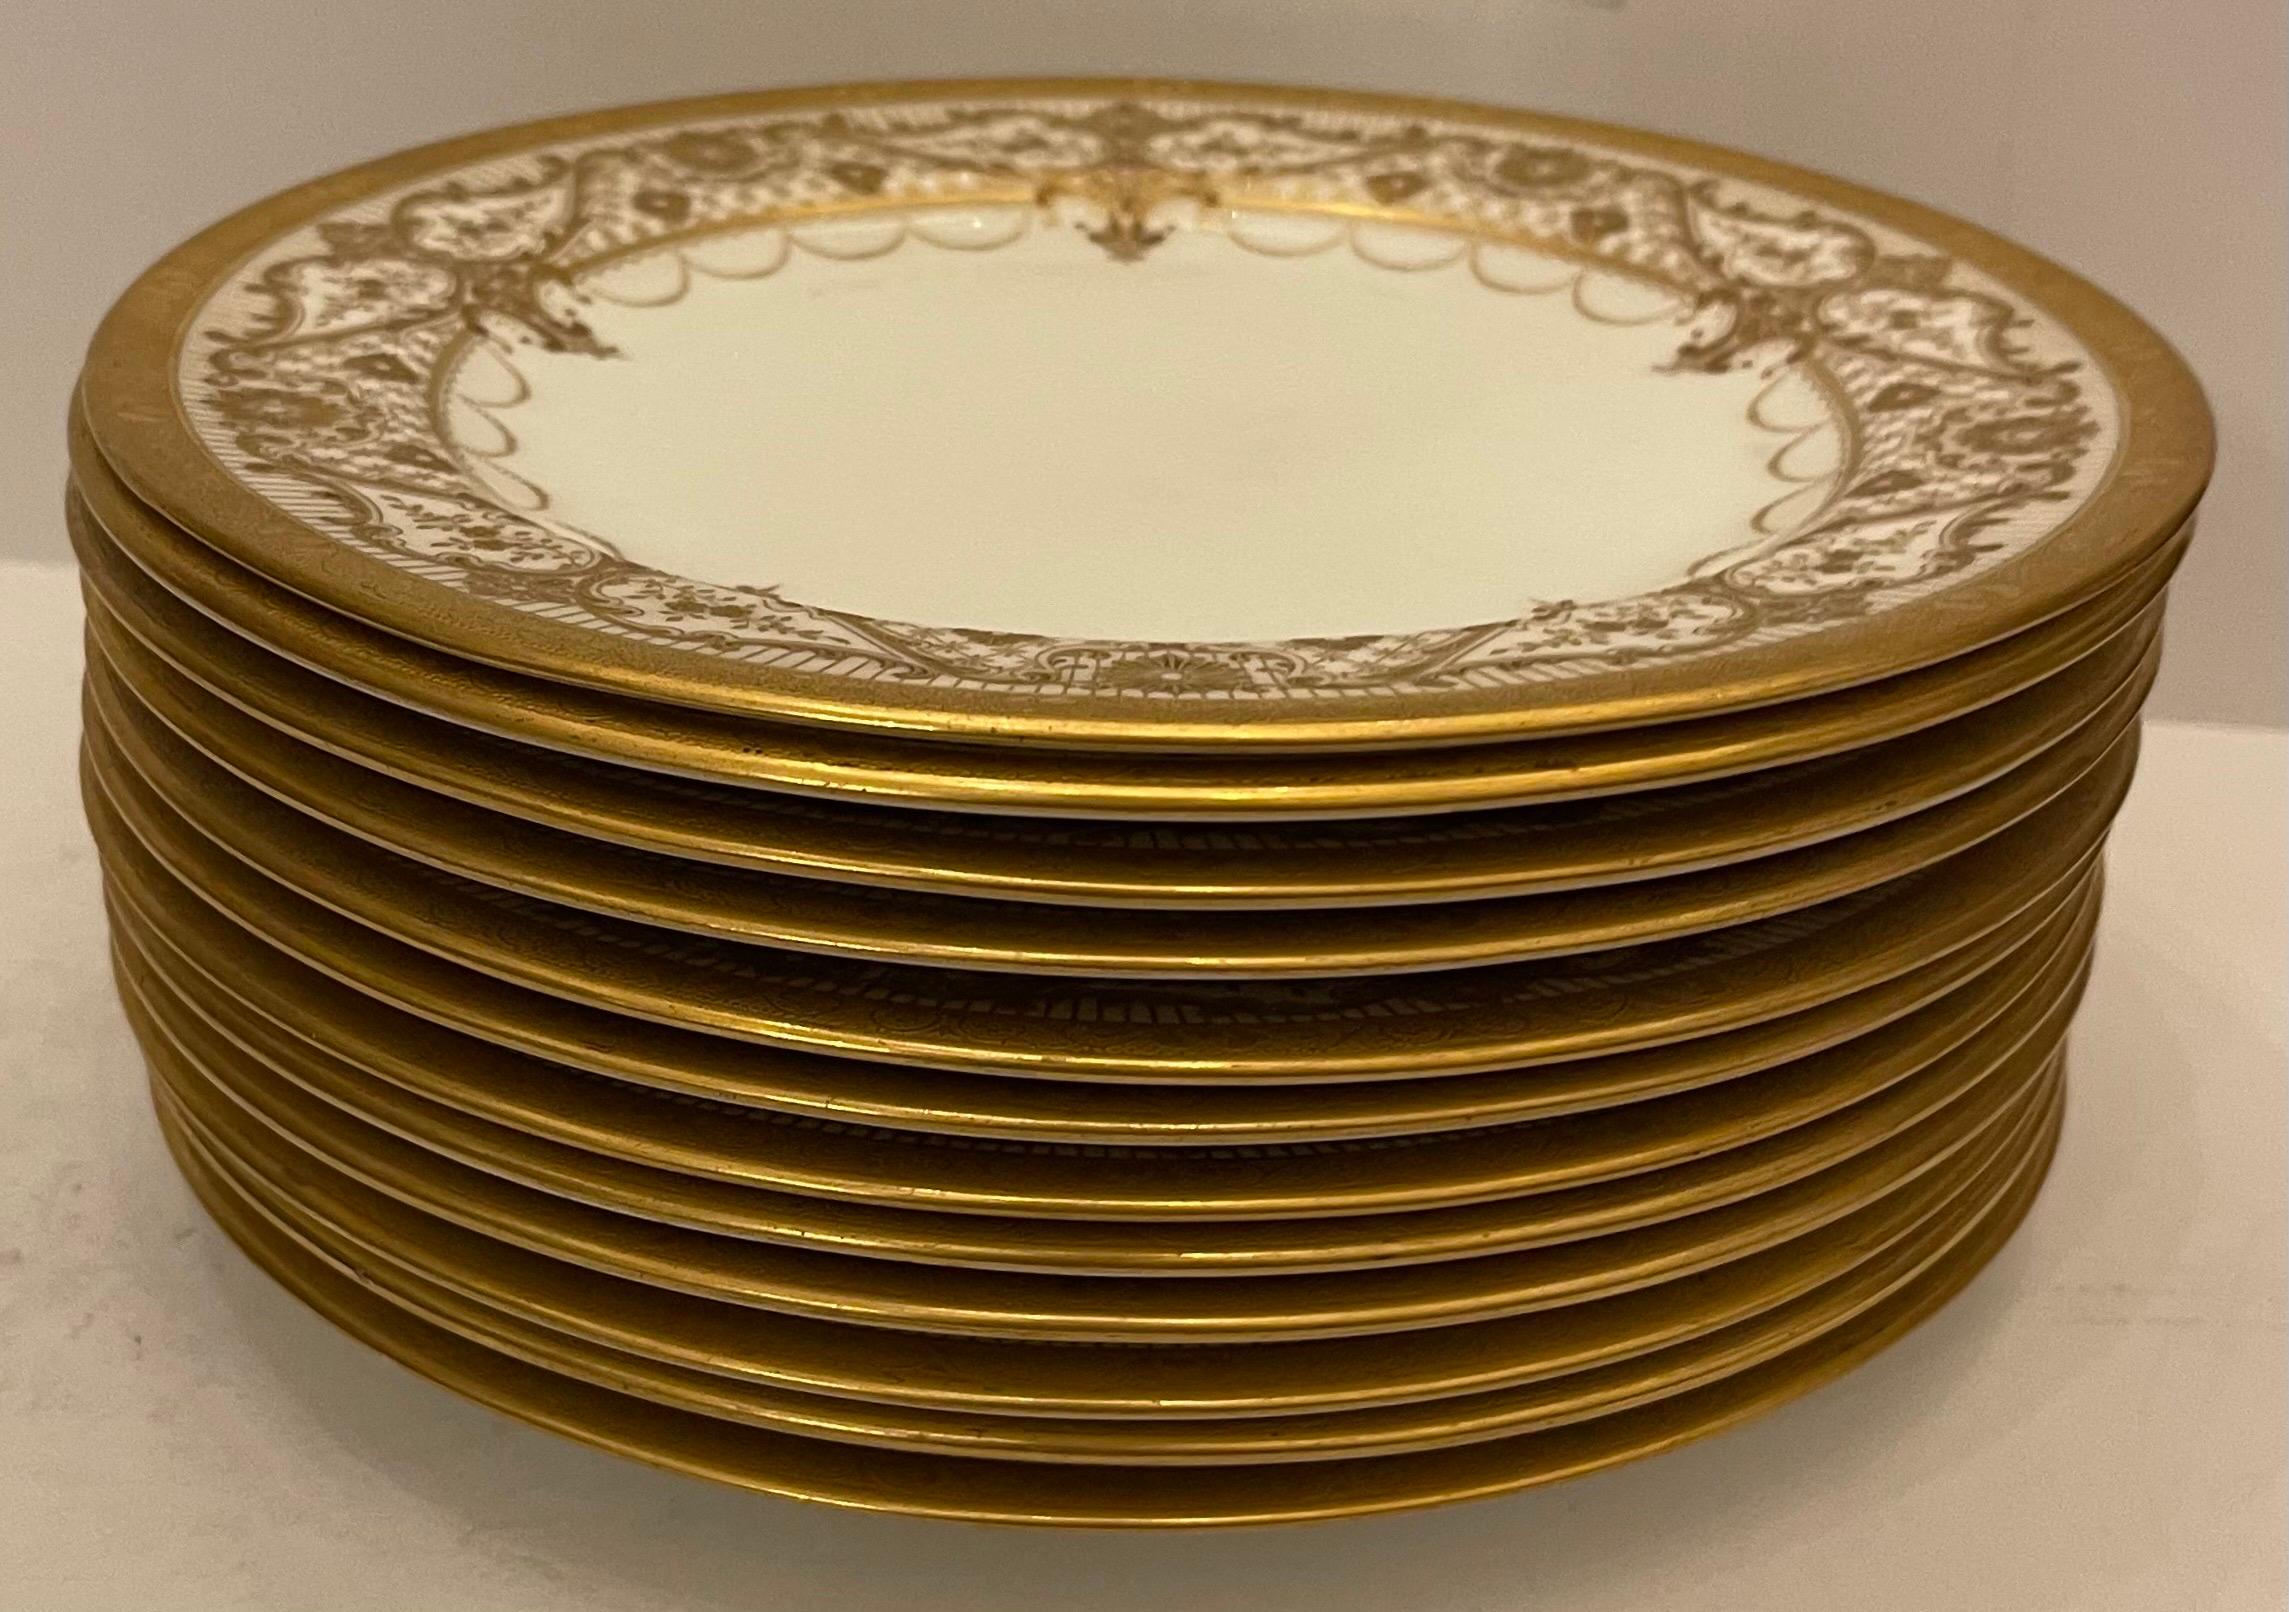 Un merveilleux service de Cauldon England composé d'un ensemble de 12 assiettes à déjeuner / dessert avec bordure en relief incrustée d'or.
Revendu par :
Higgind & Seiter New York.